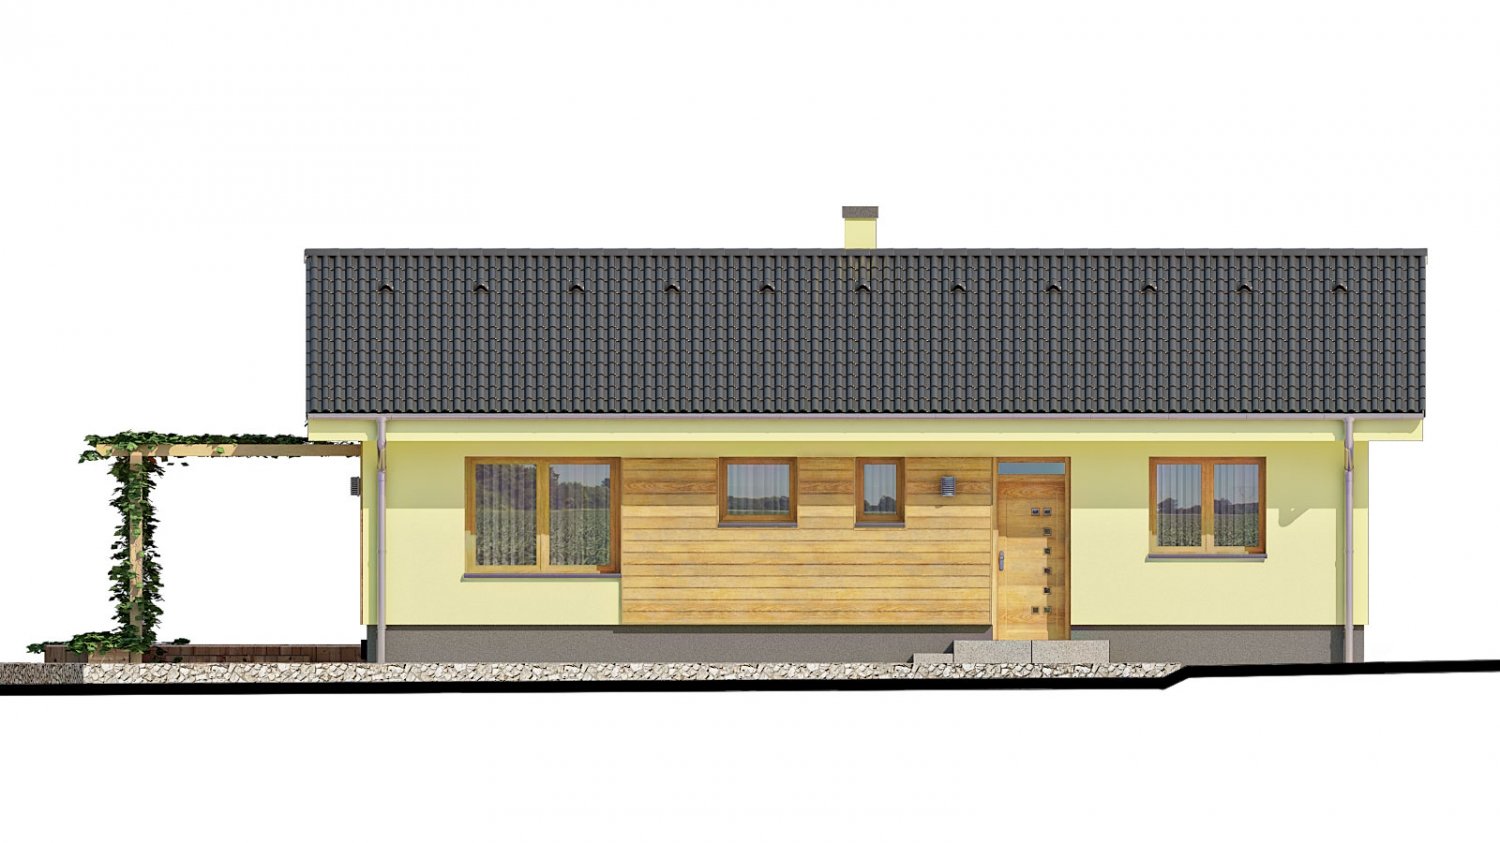 Zrkadlový pohľad 1. - Malý dům s terasou. Může být realizován jako dvojdům s projektem v zrcadlovém obraze.